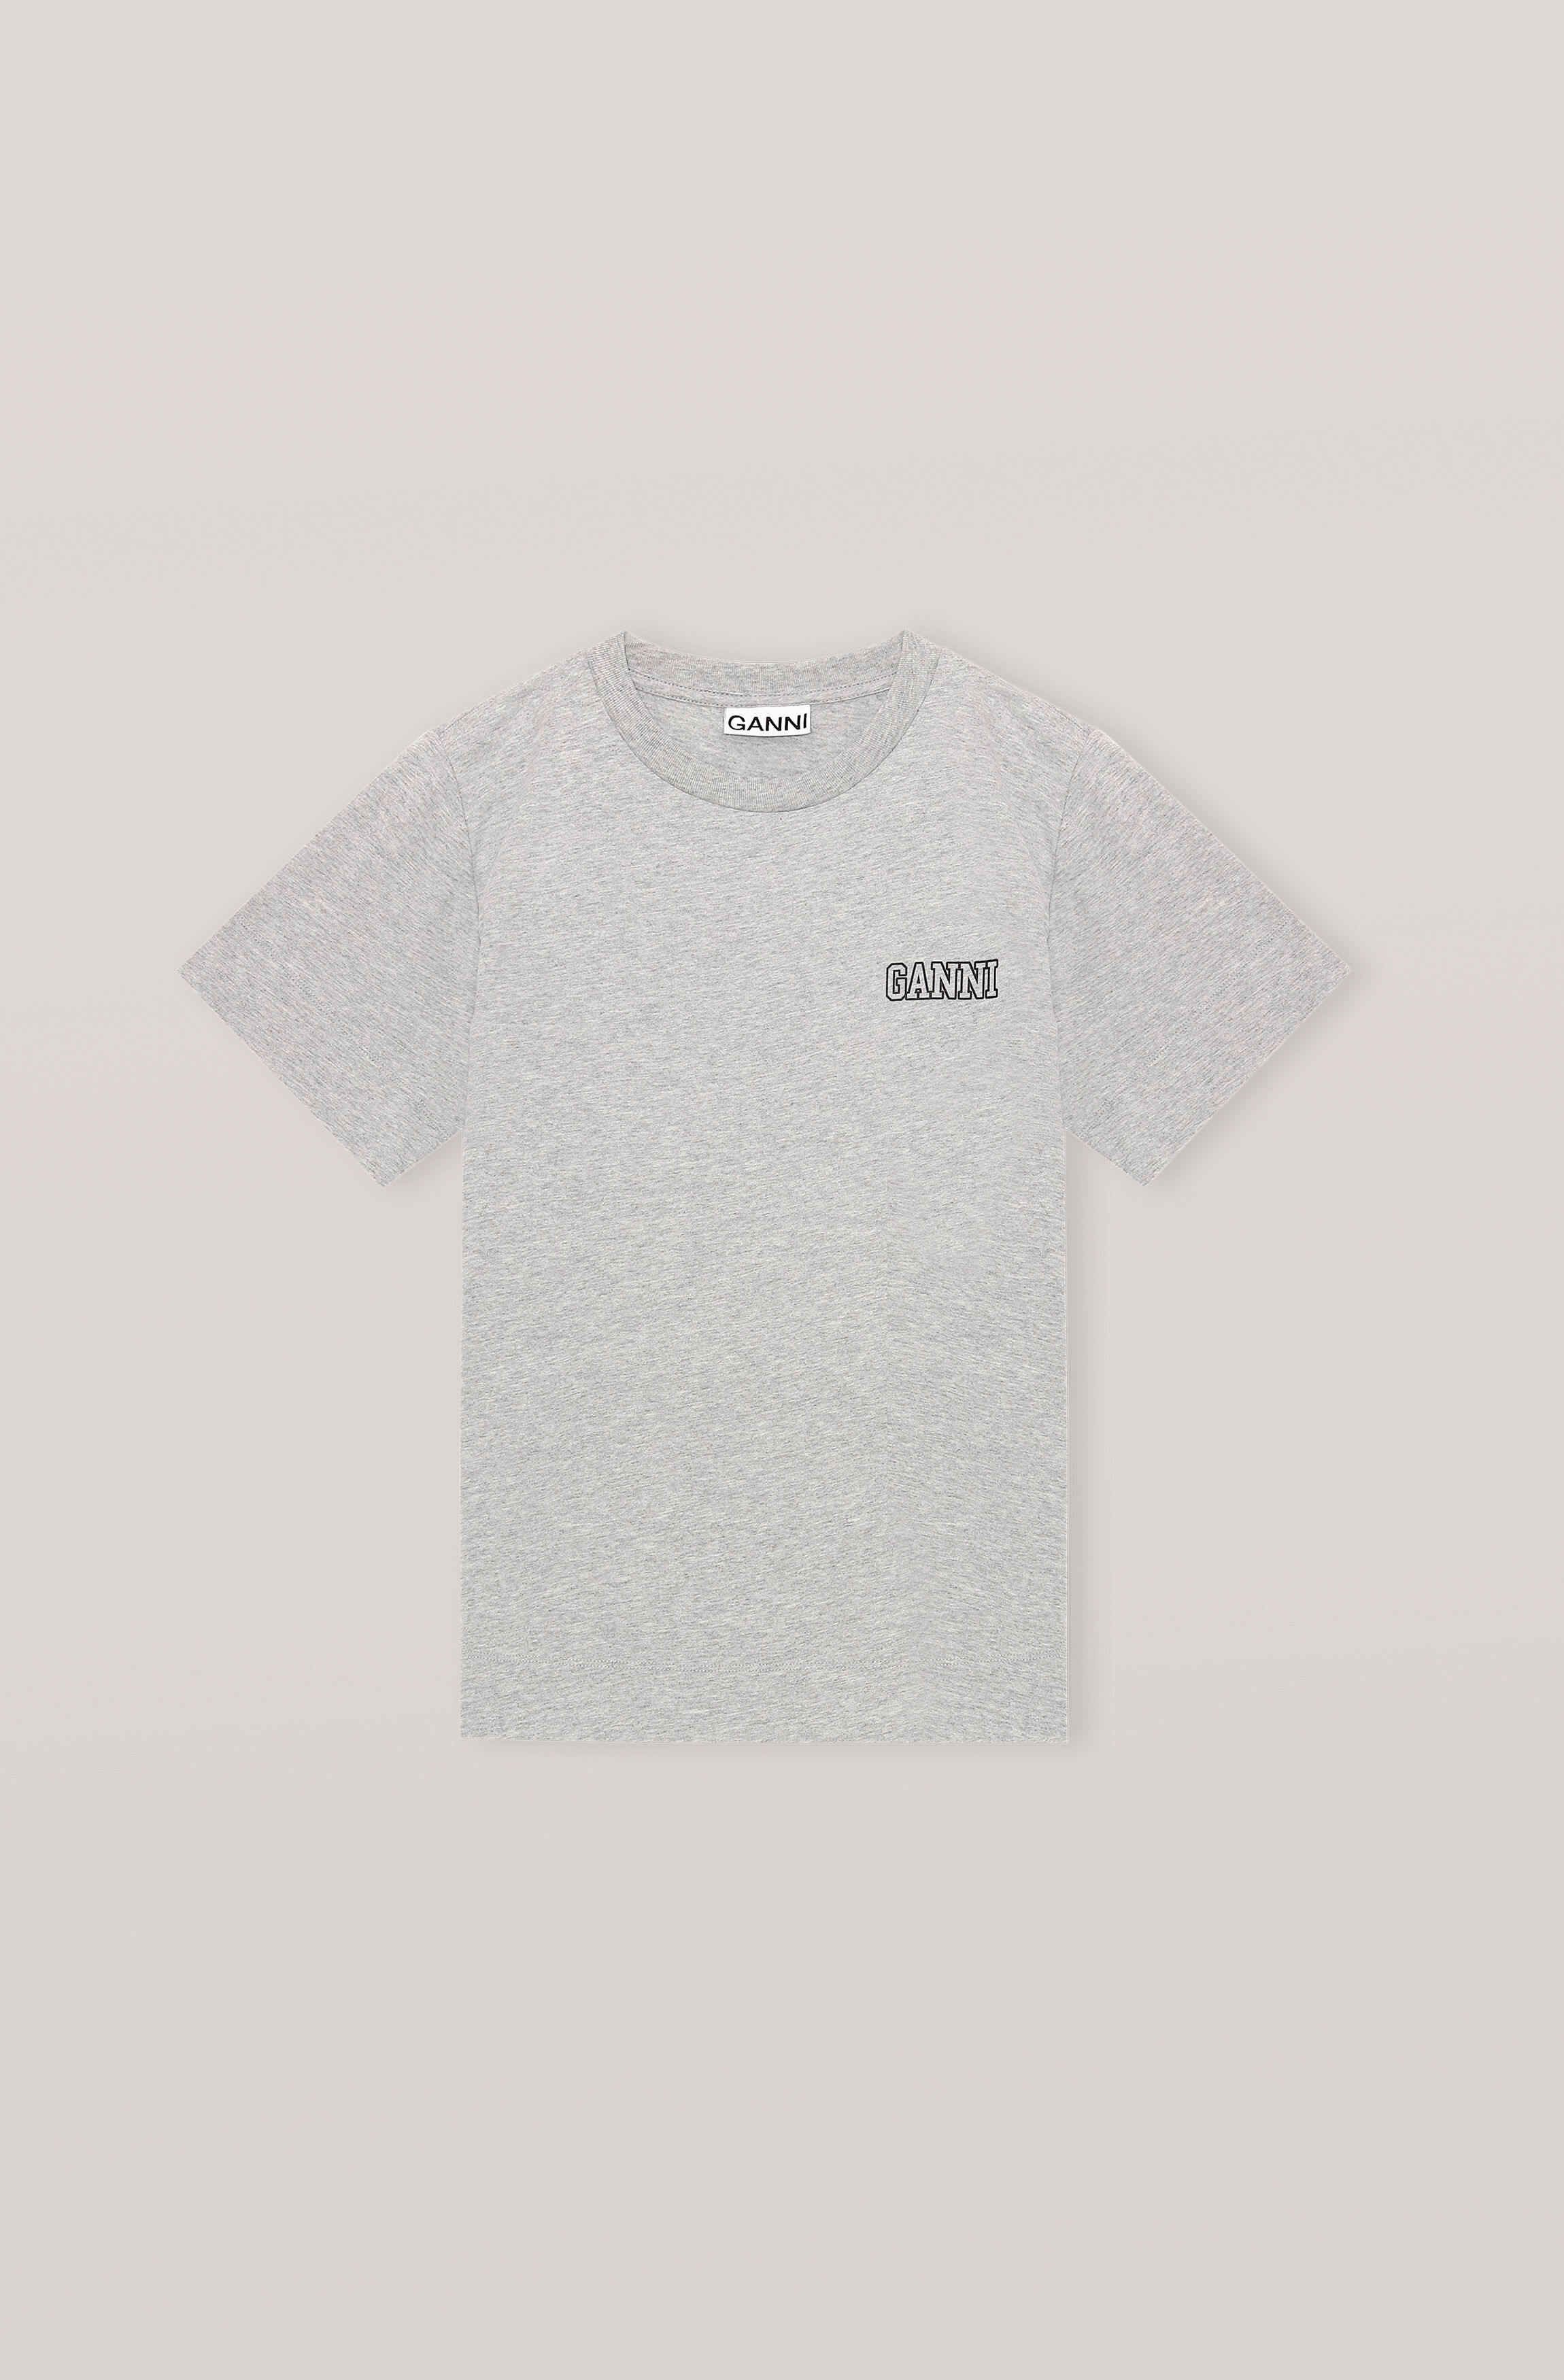 Ganni + Jersey T-Shirt